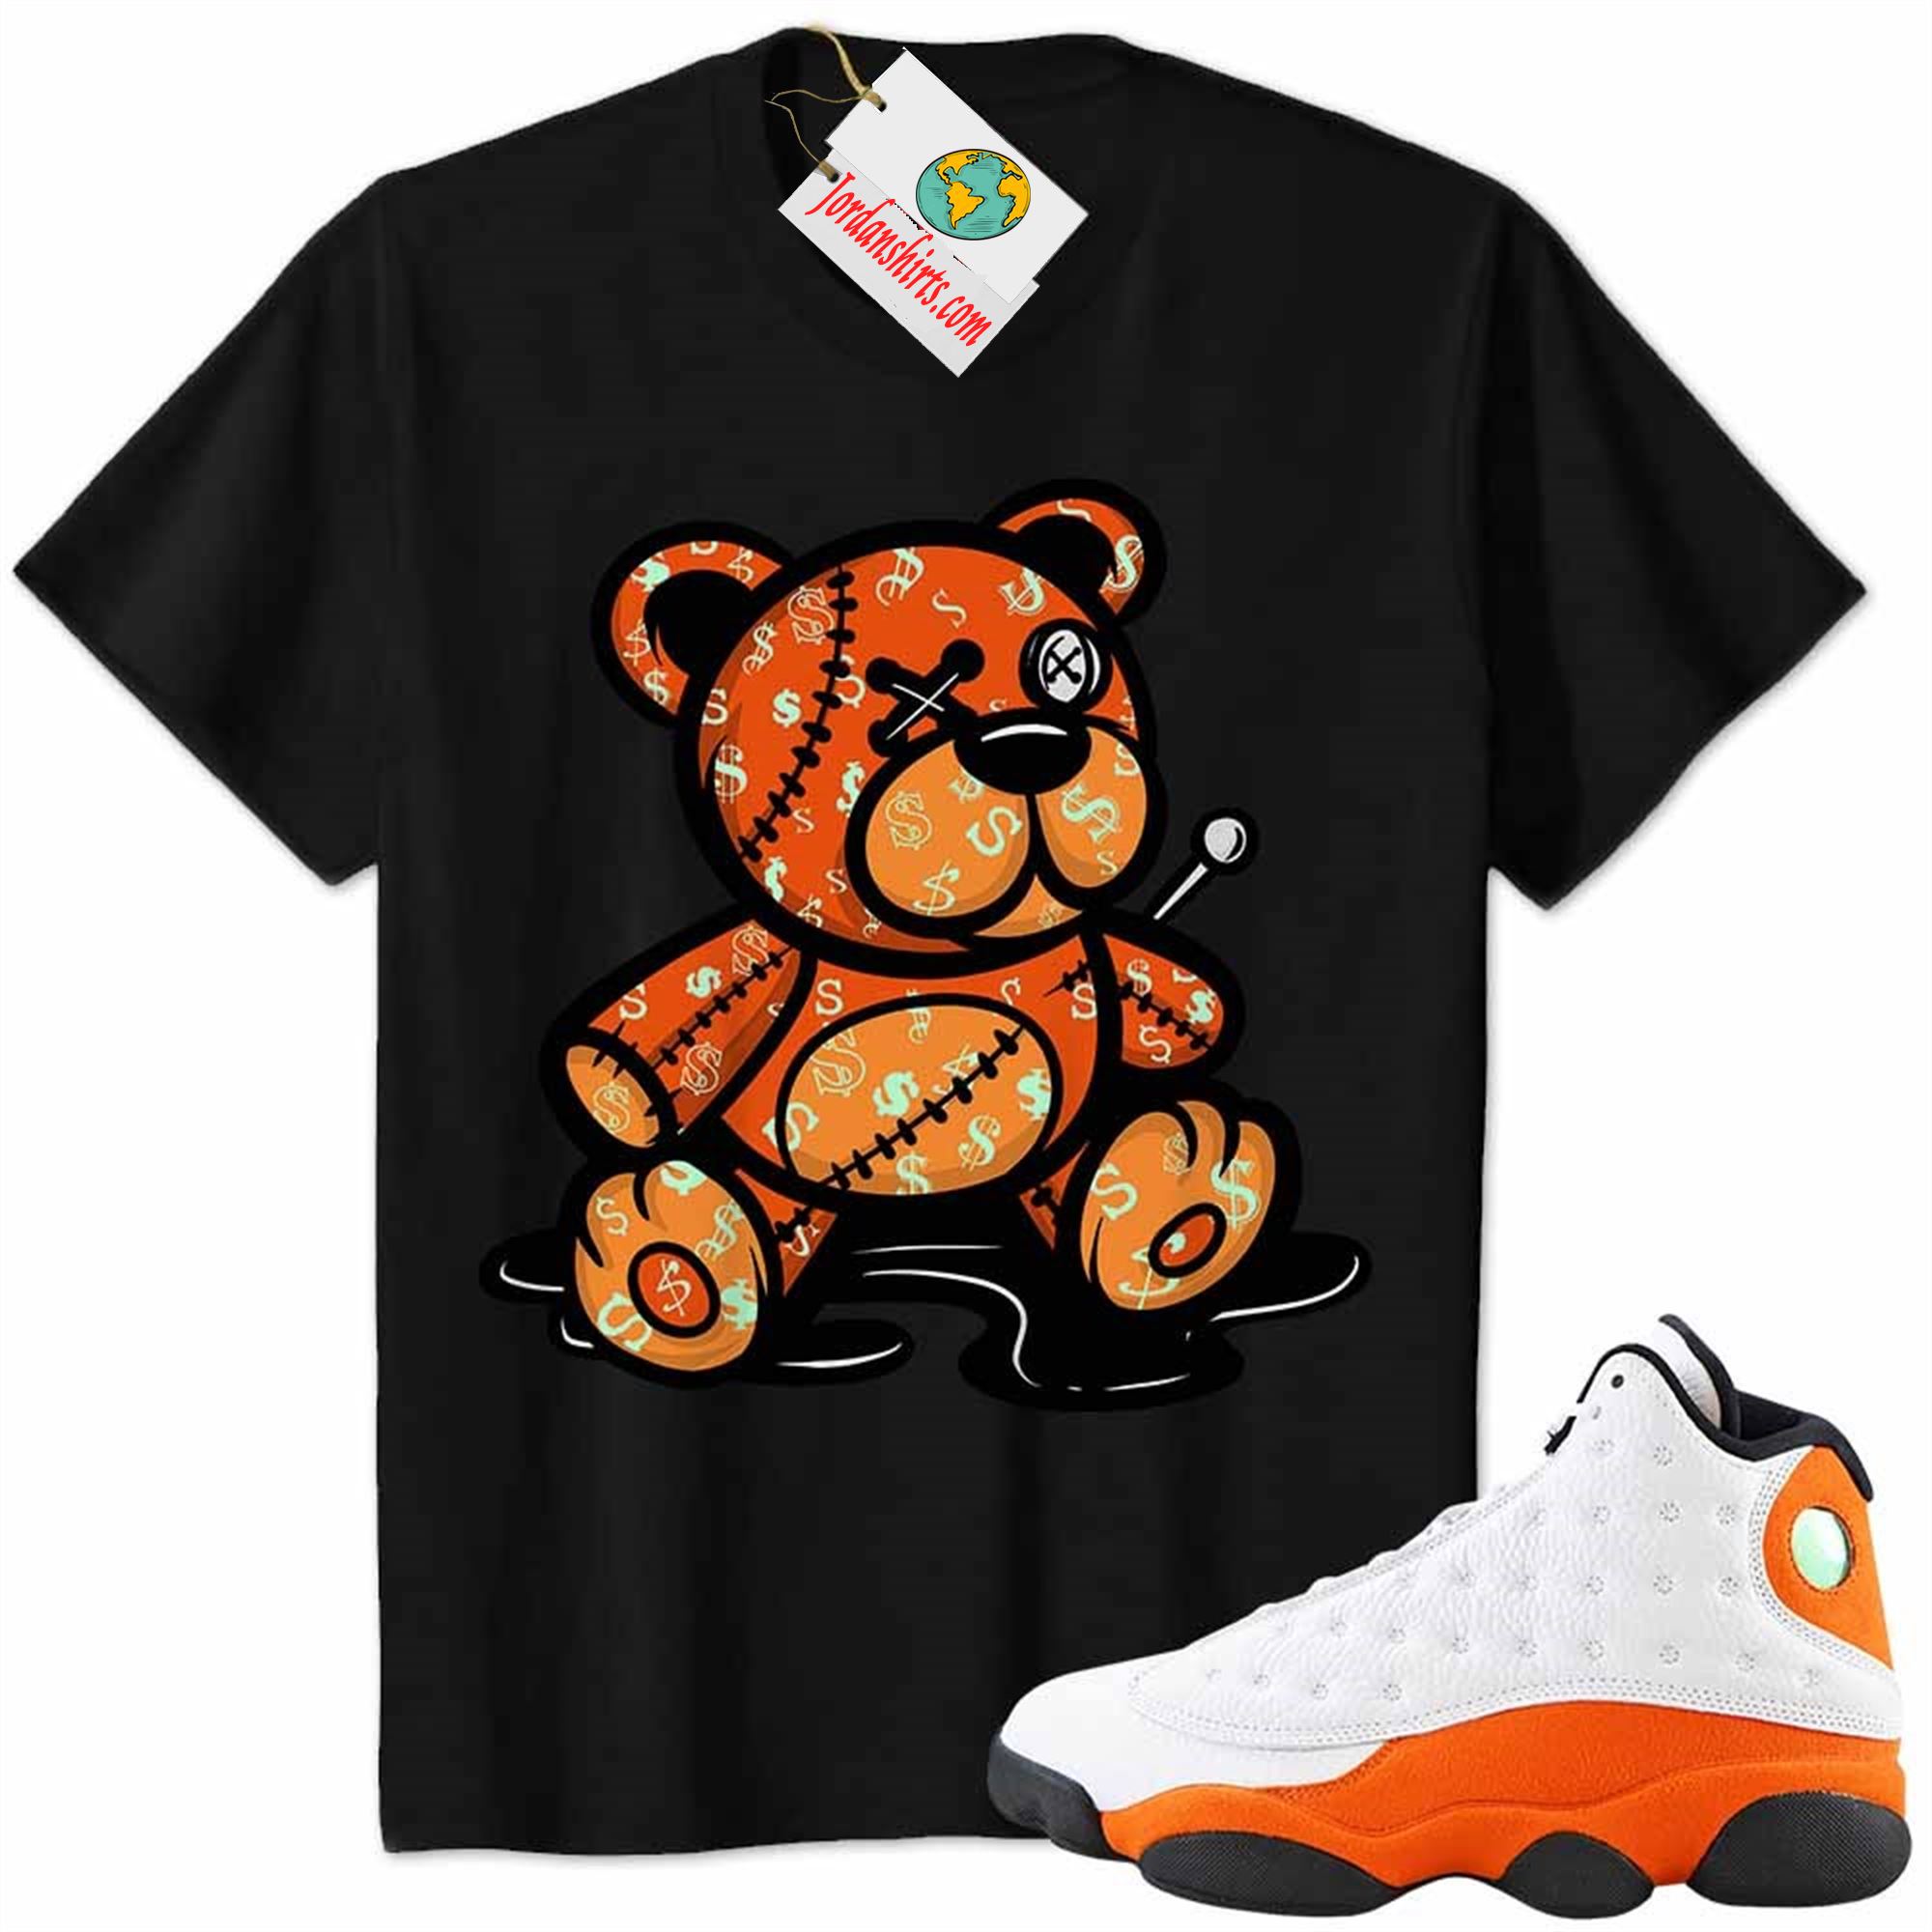 Jordan 13 Shirt, Jordan 13 Starfish Shirt Teddy Bear All Money In Black Full Size Up To 5xl